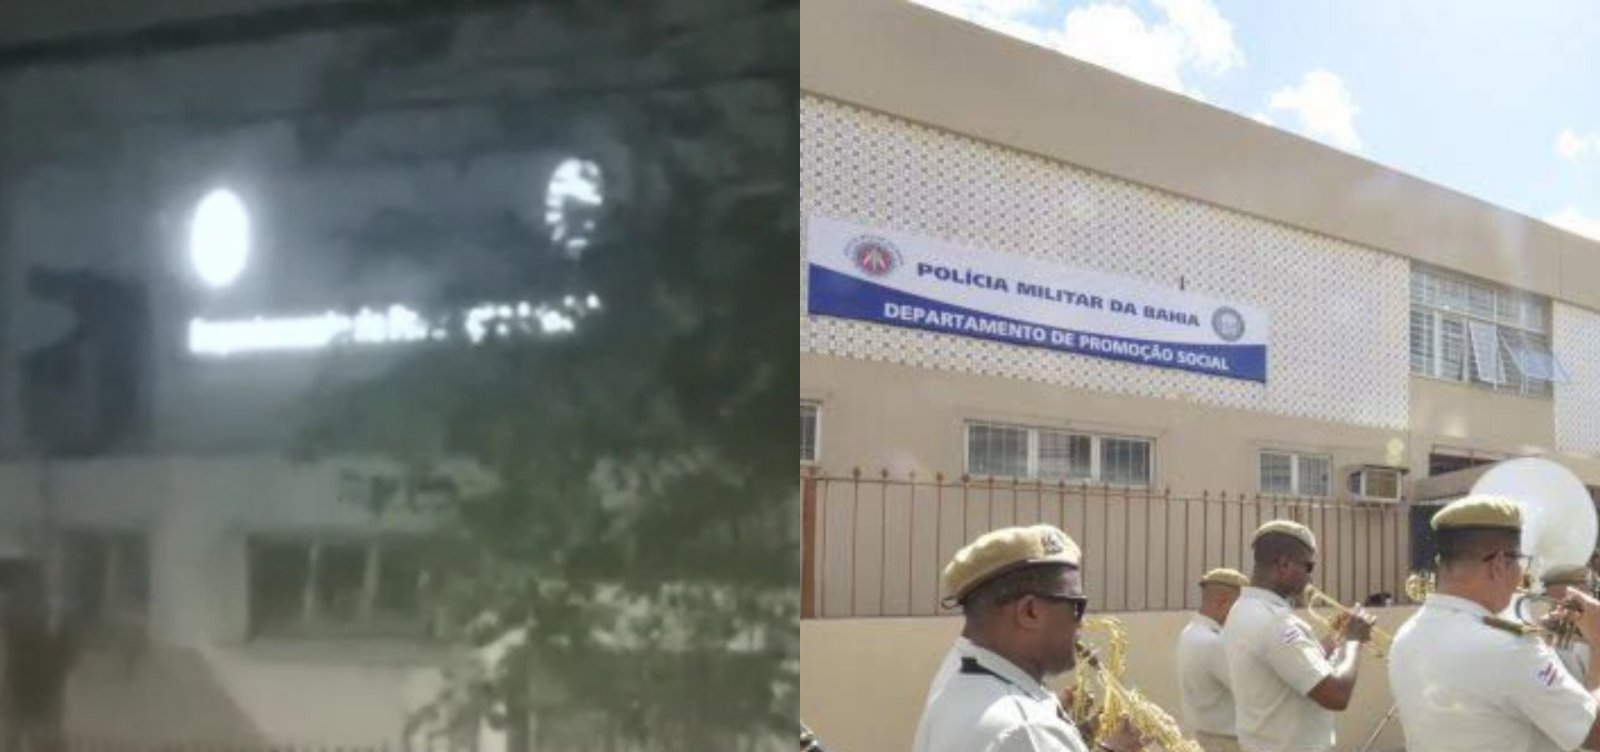 Homem escala prédio da PM para roubar fios; veja vídeo 